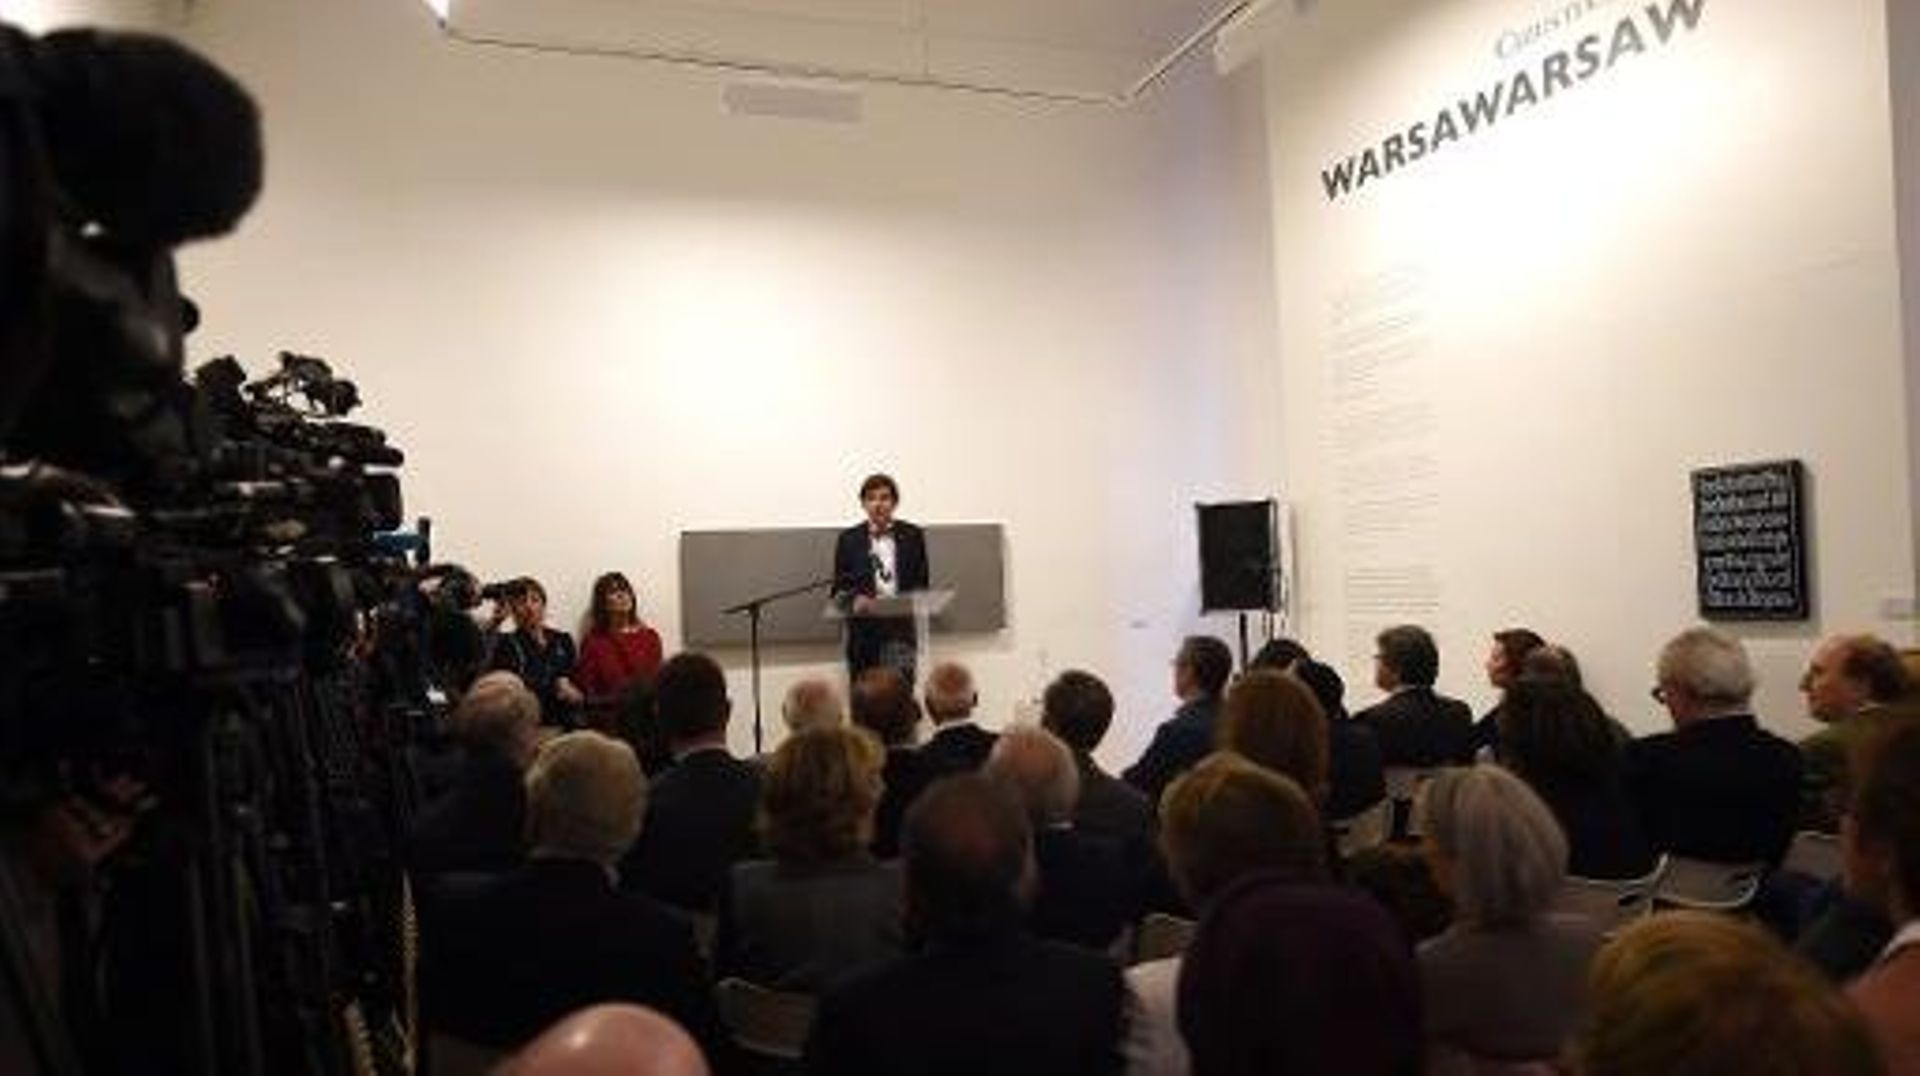 Le Premier ministre belge Elio Di Rupo s'adresse à l'assistance lors de la cérémonie de réouverture du musée juif de Bruxelles, le 14 septembre 2014